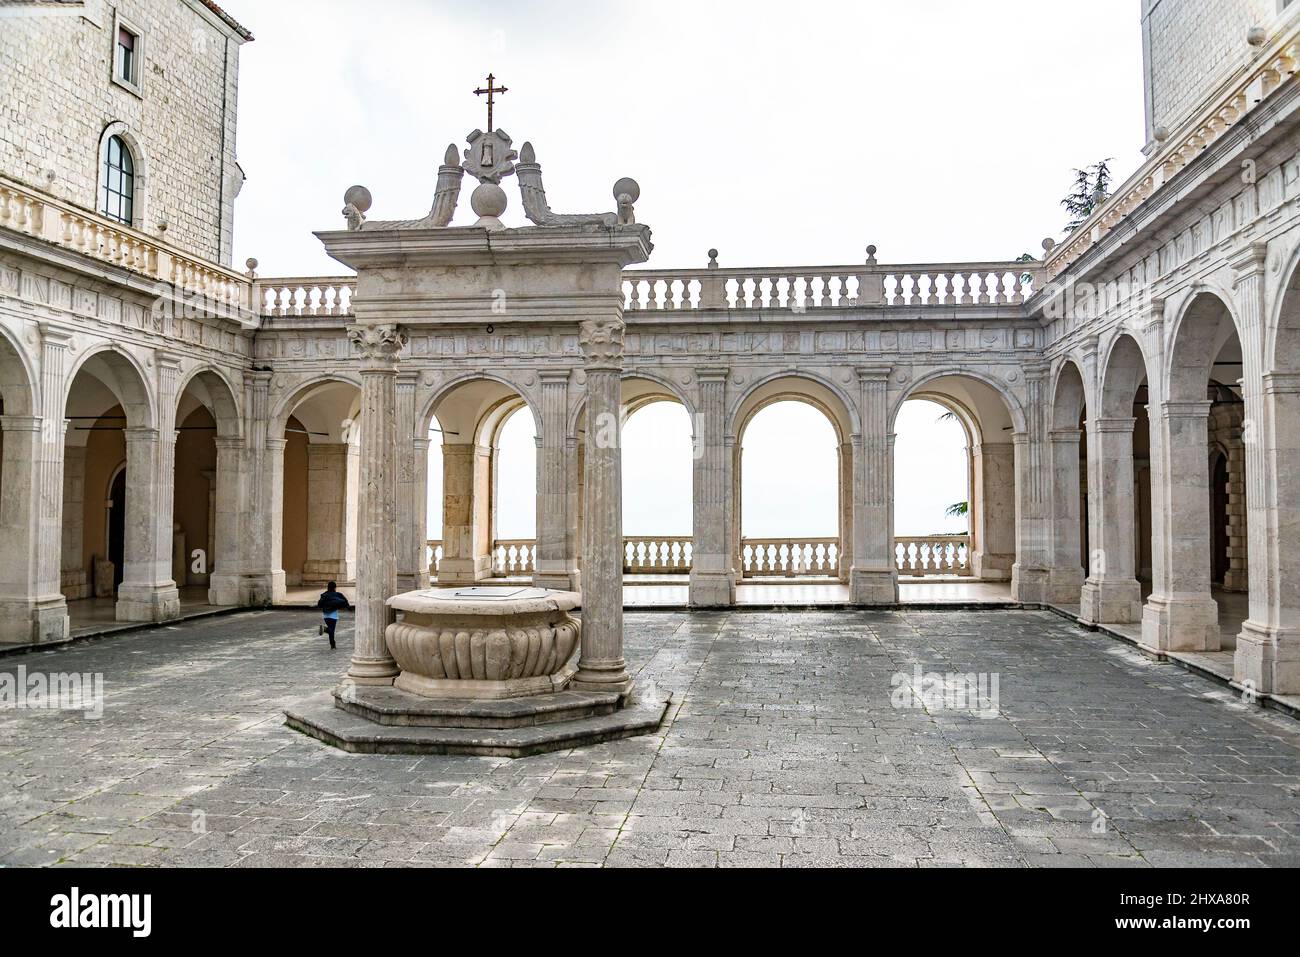 L'abbazia storica di Montecassino, nei pressi della città di Cassino, Italia Foto Stock